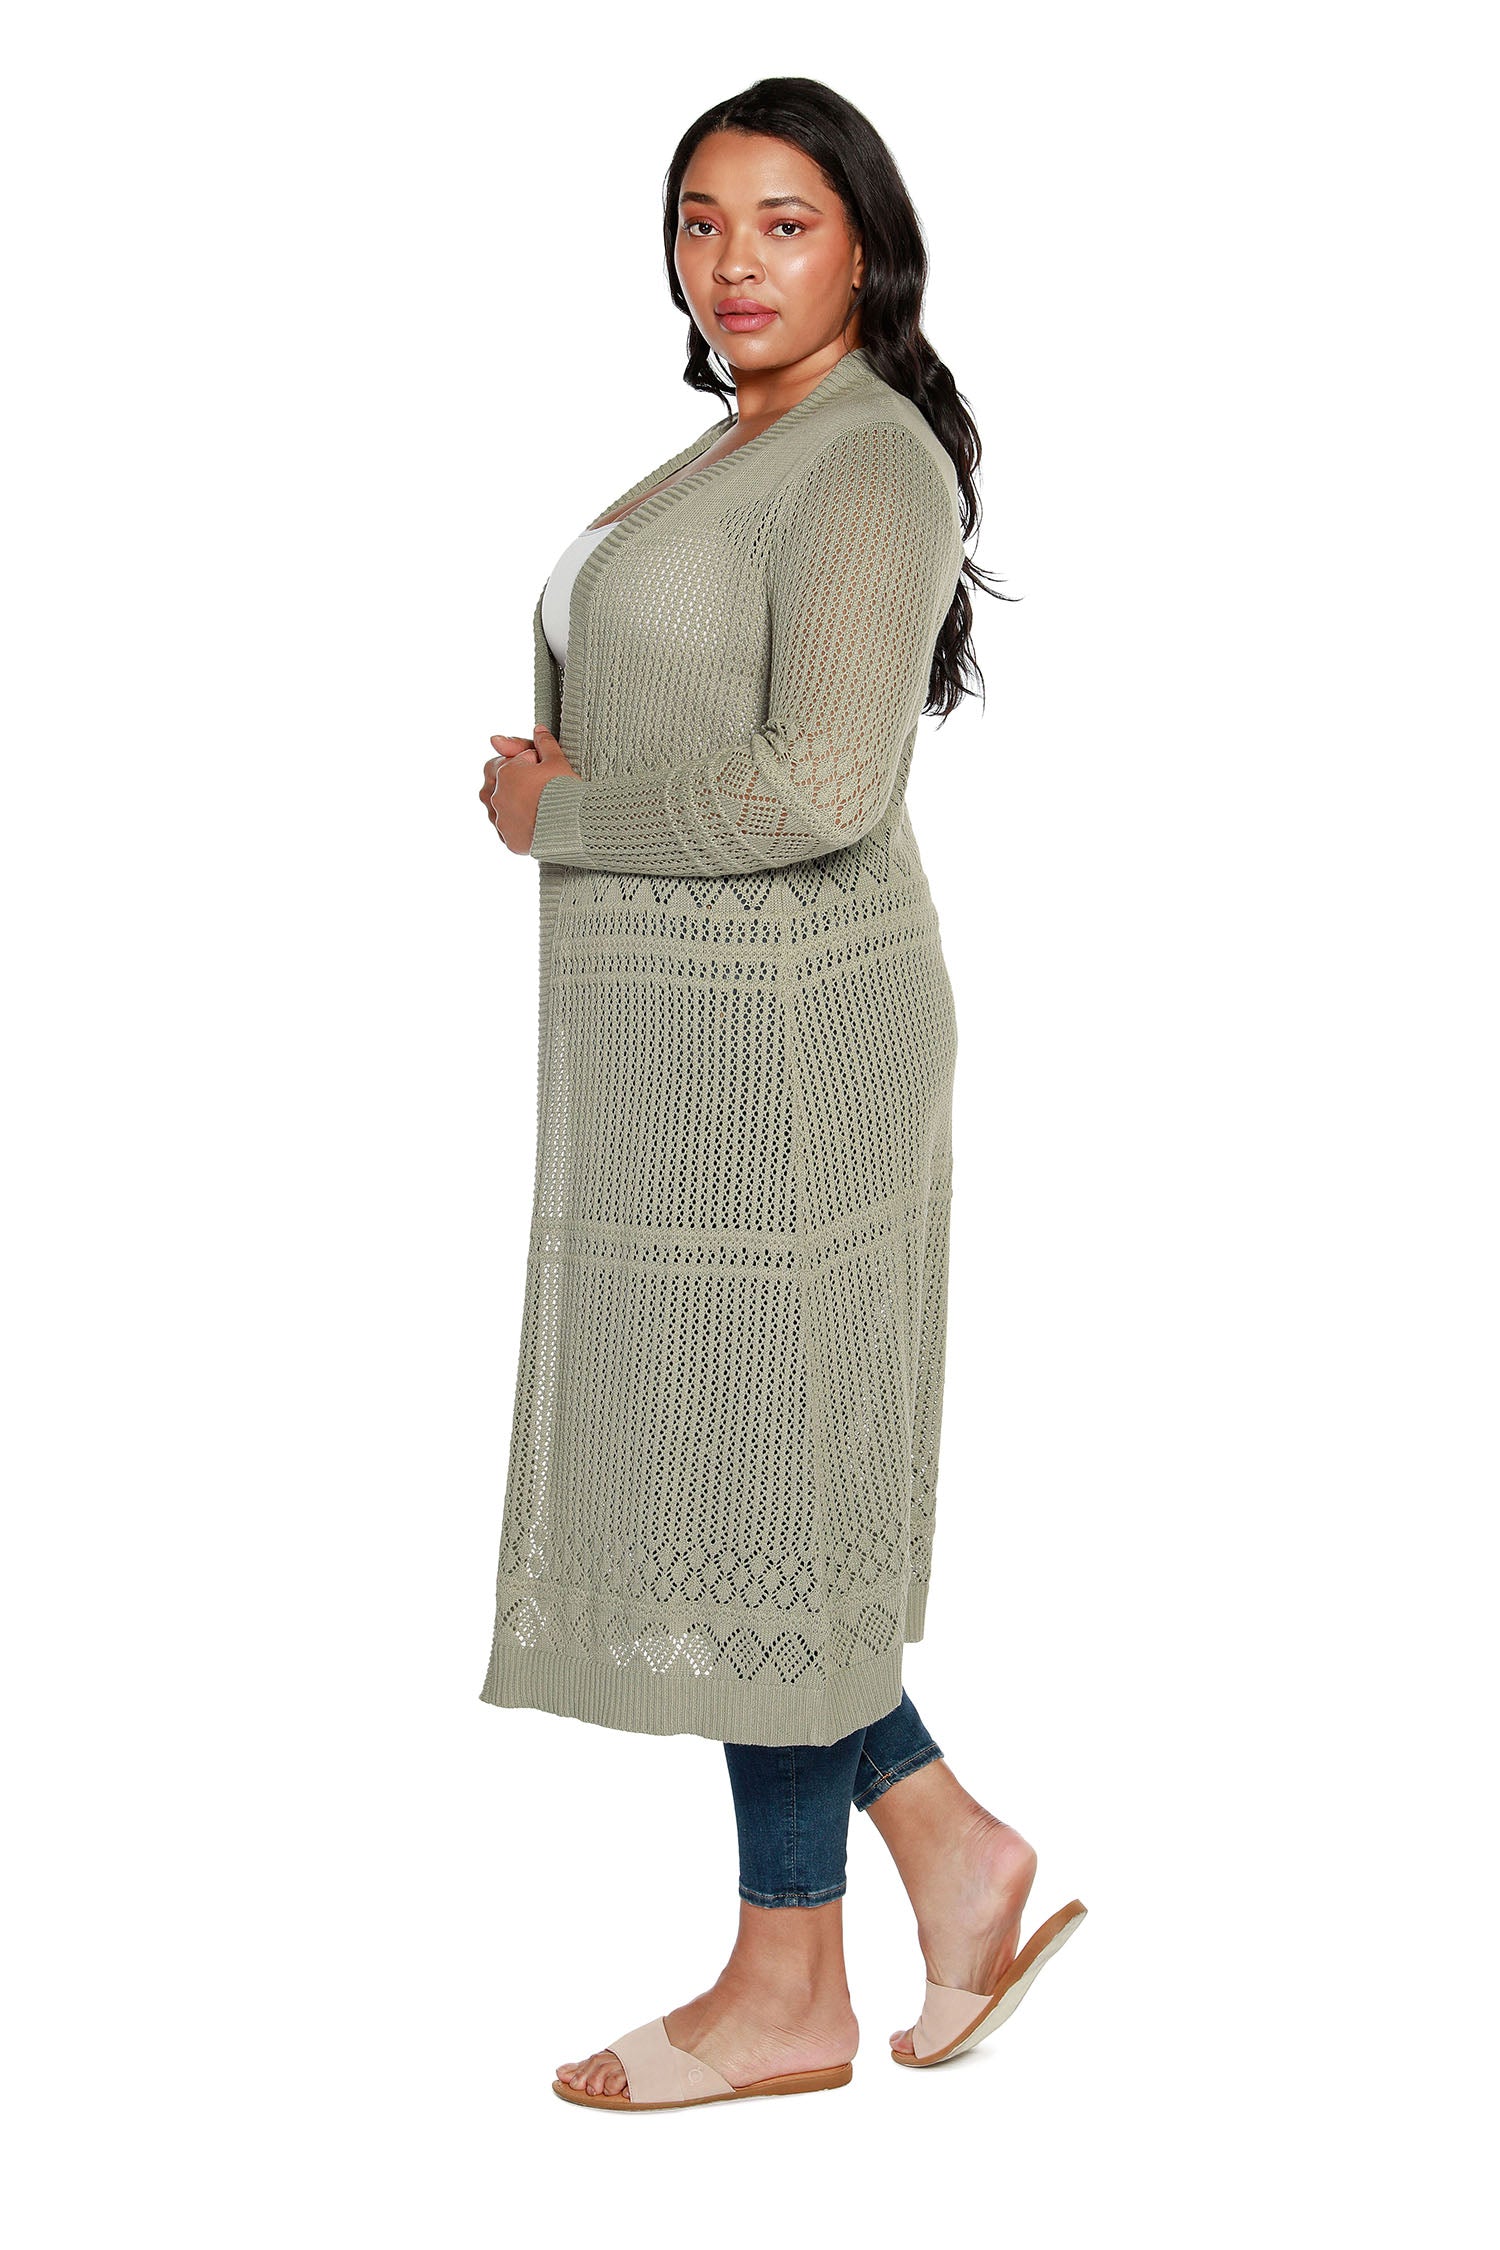 Cárdigan plumero para mujer con punto pointelle de crochet, mangas largas y frente abierto | con curvas